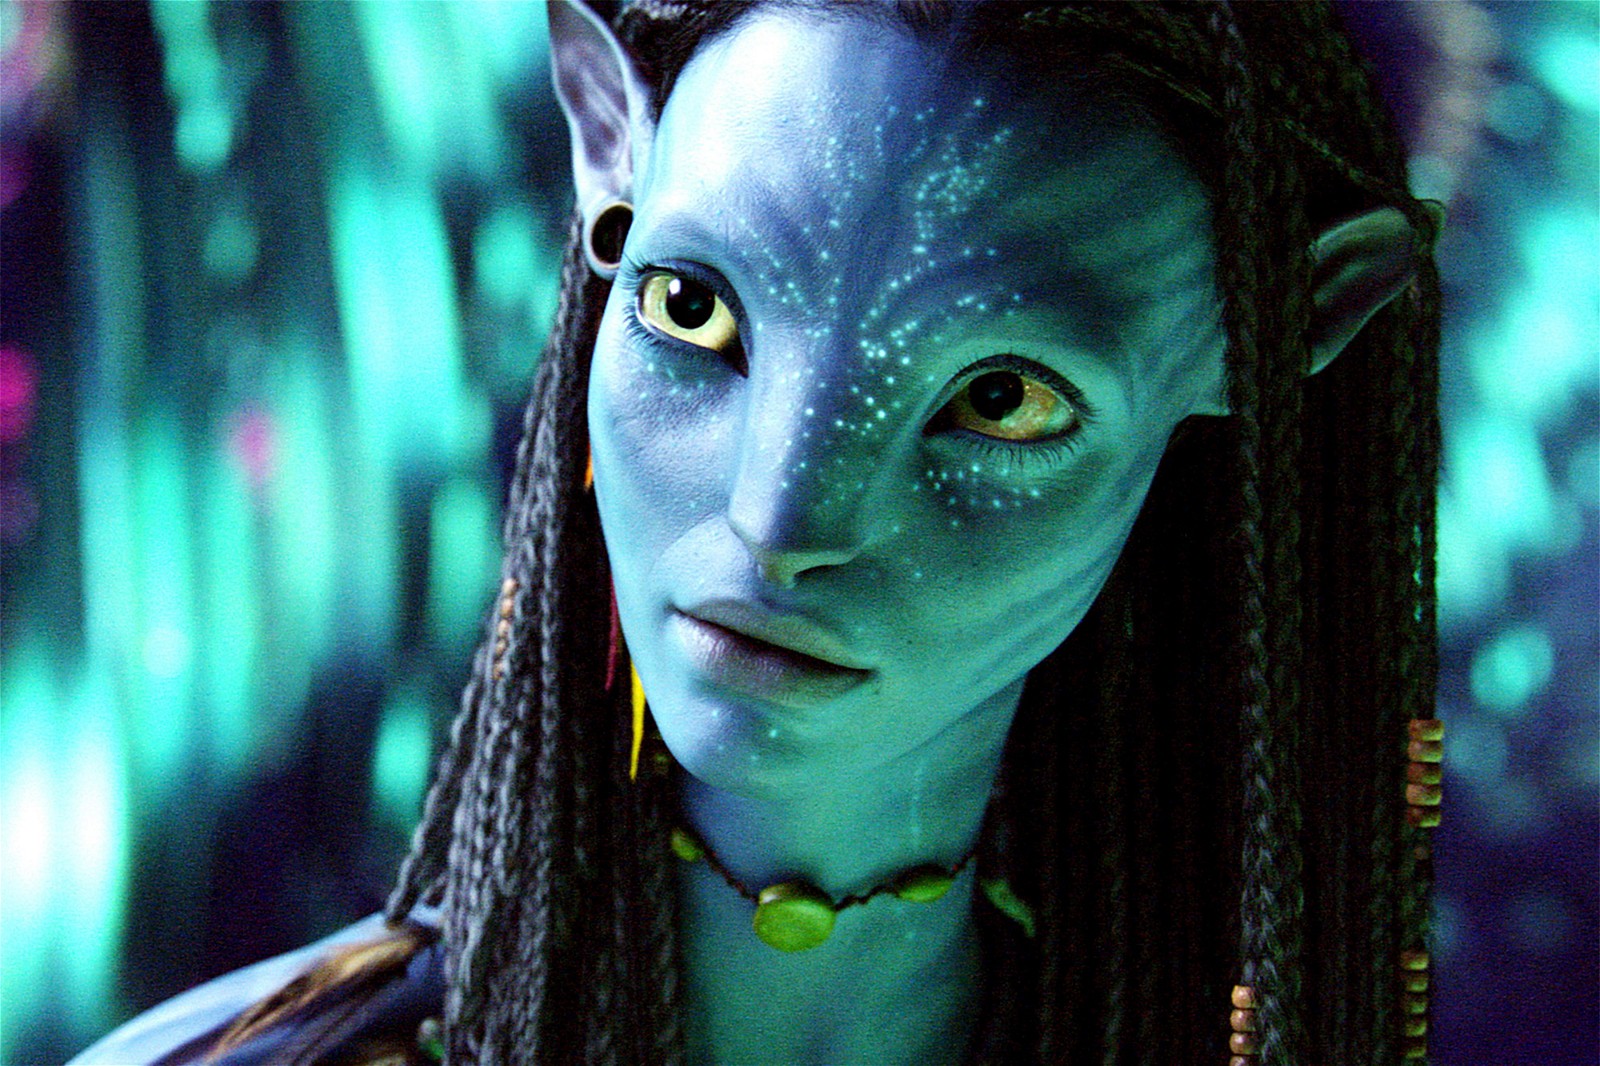 Zoe Saldaña as Neytiri in Avatar (2009).